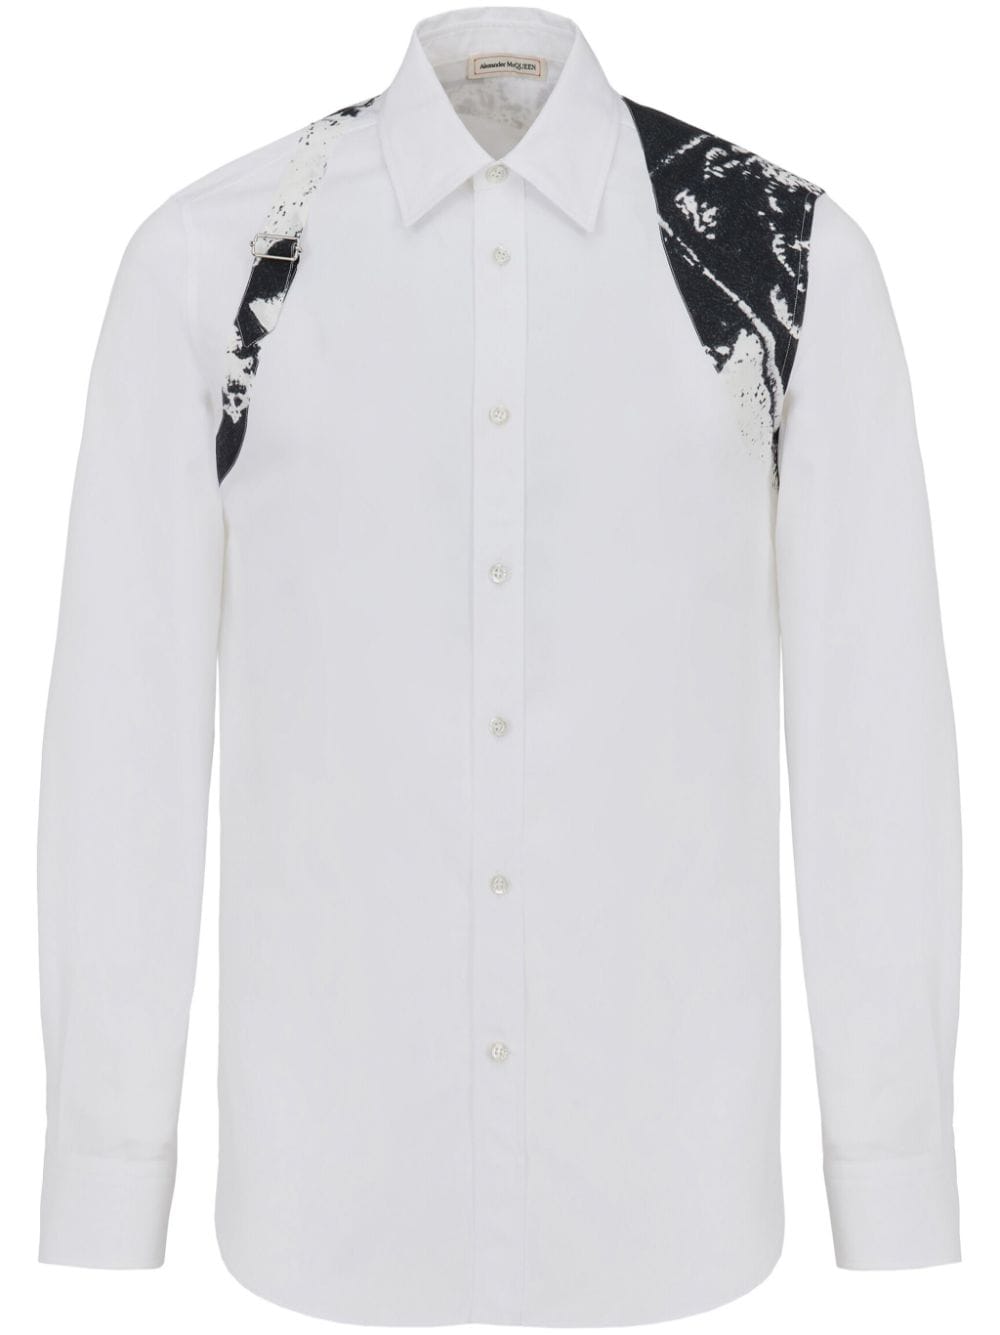 折叠背带衬衫-有机棉白色男士衬衫